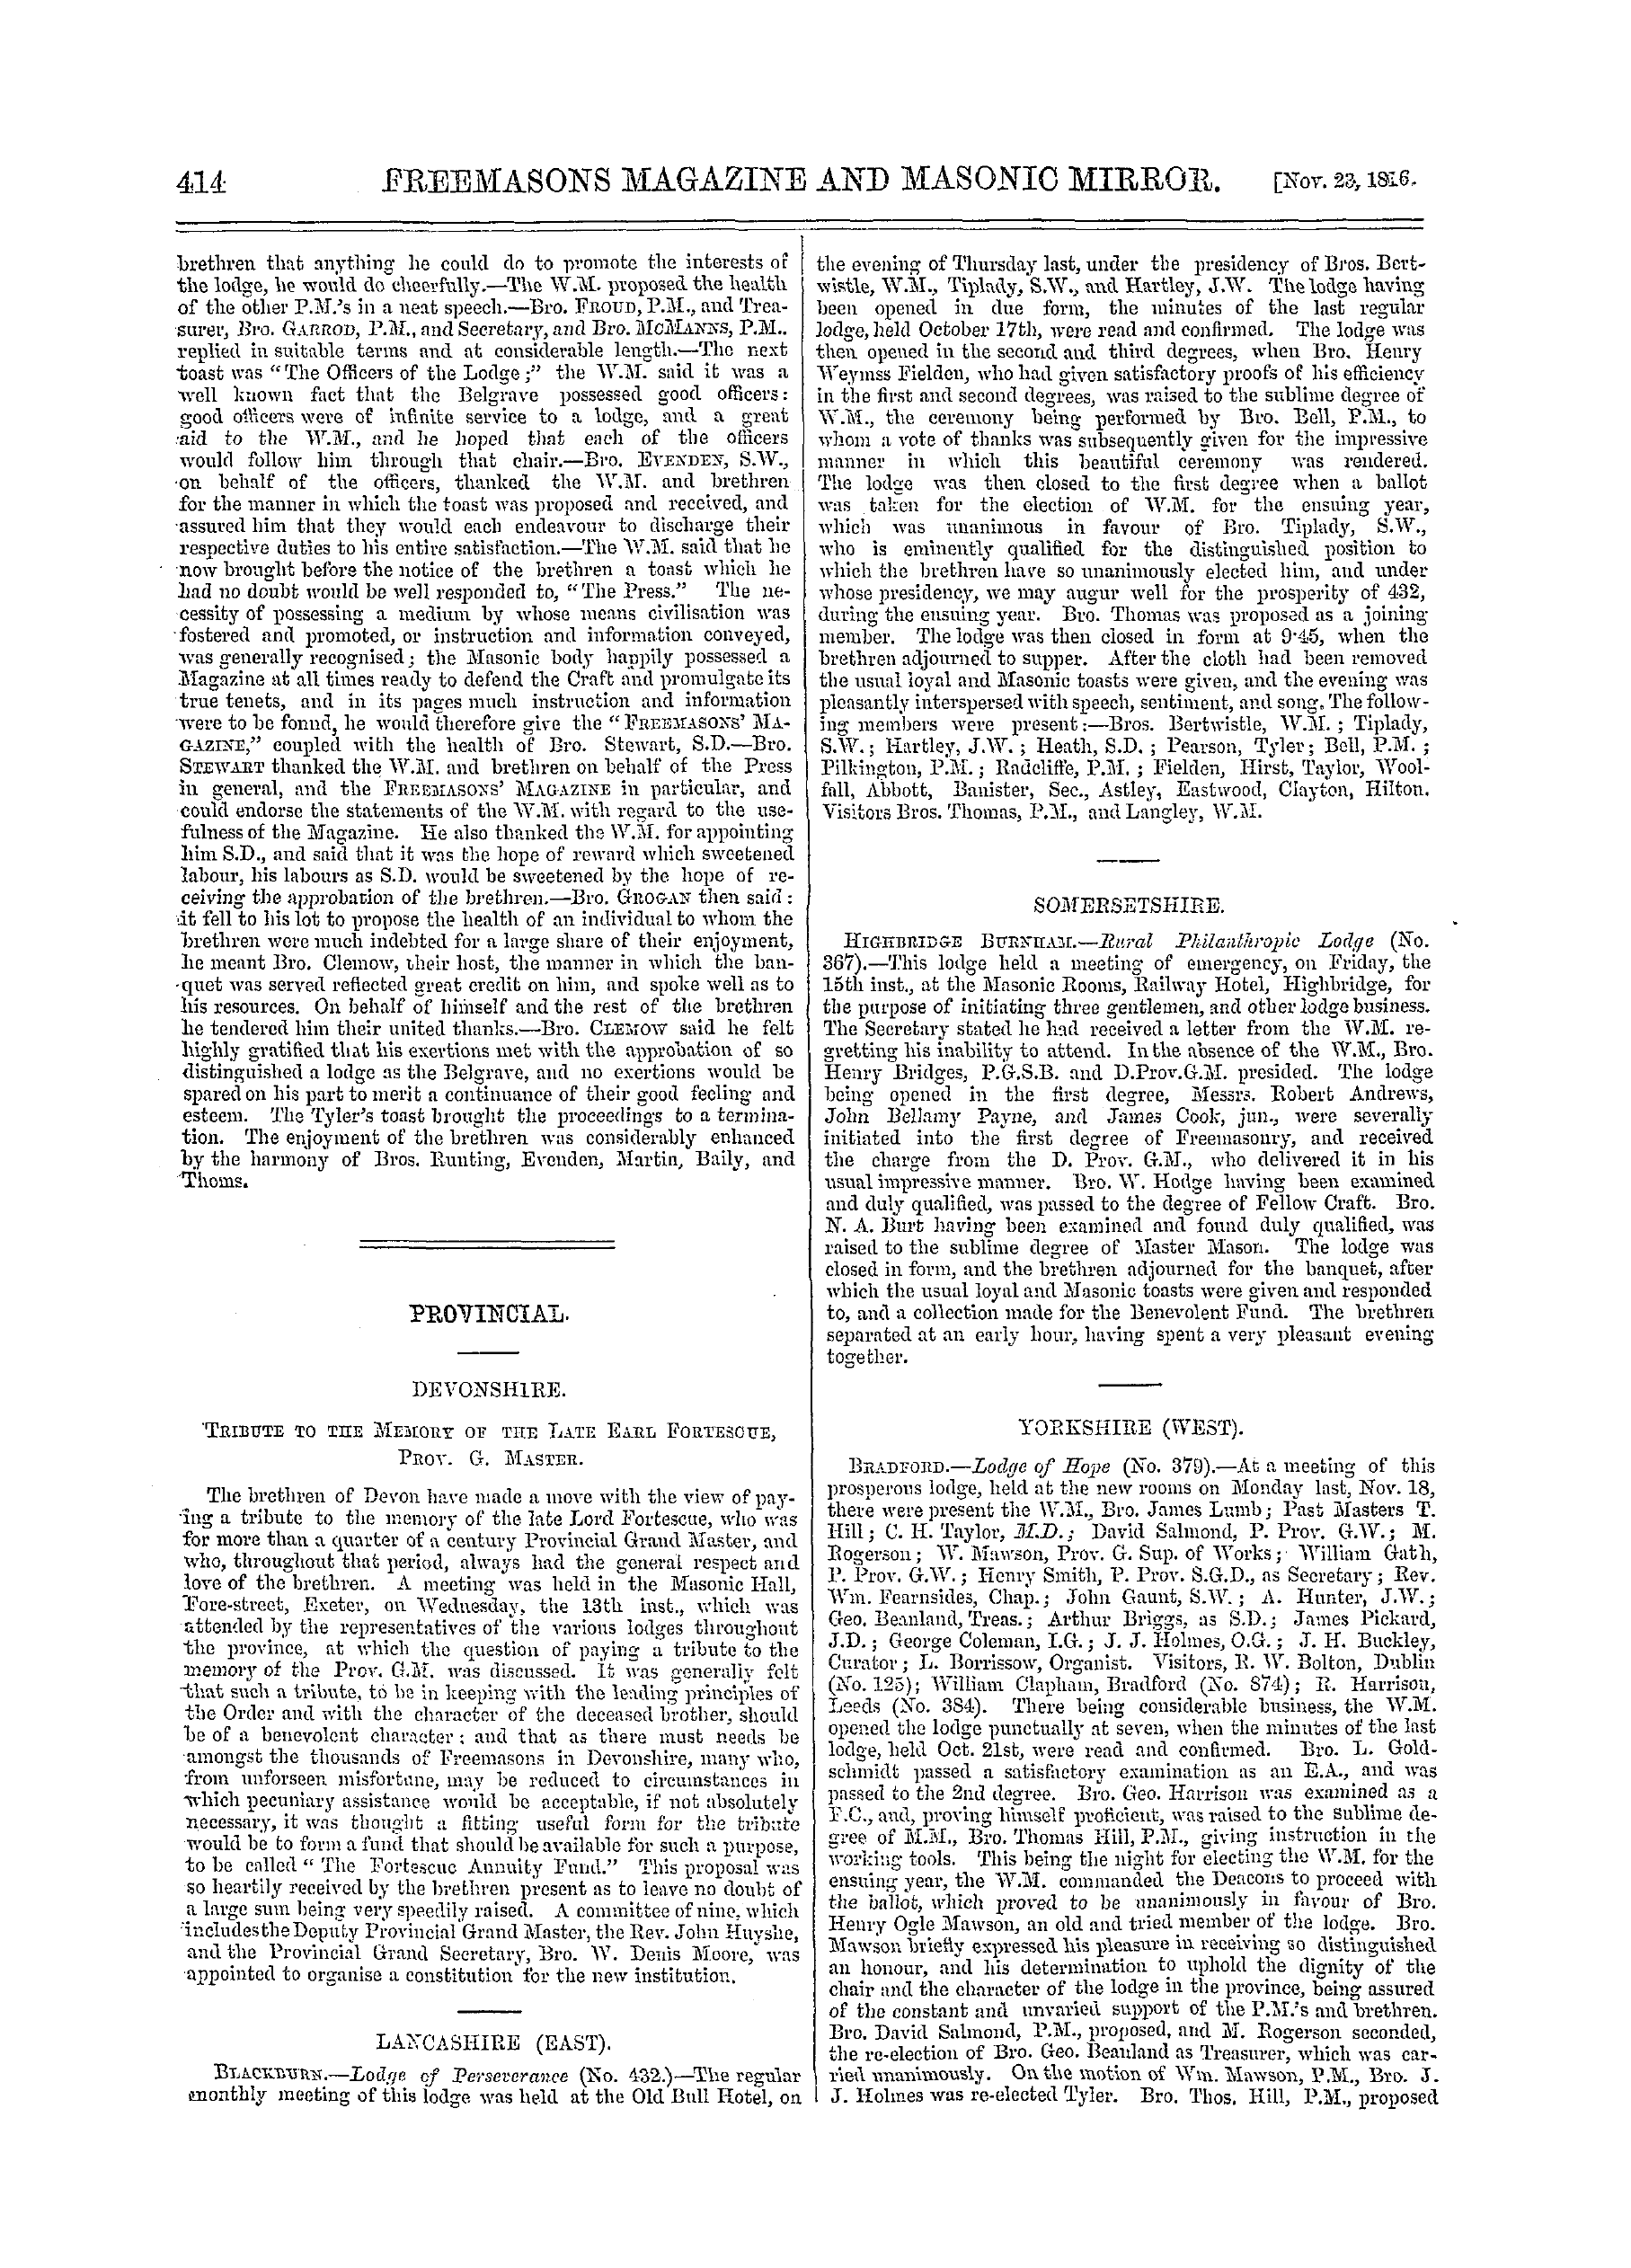 The Freemasons' Monthly Magazine: 1861-11-23: 14